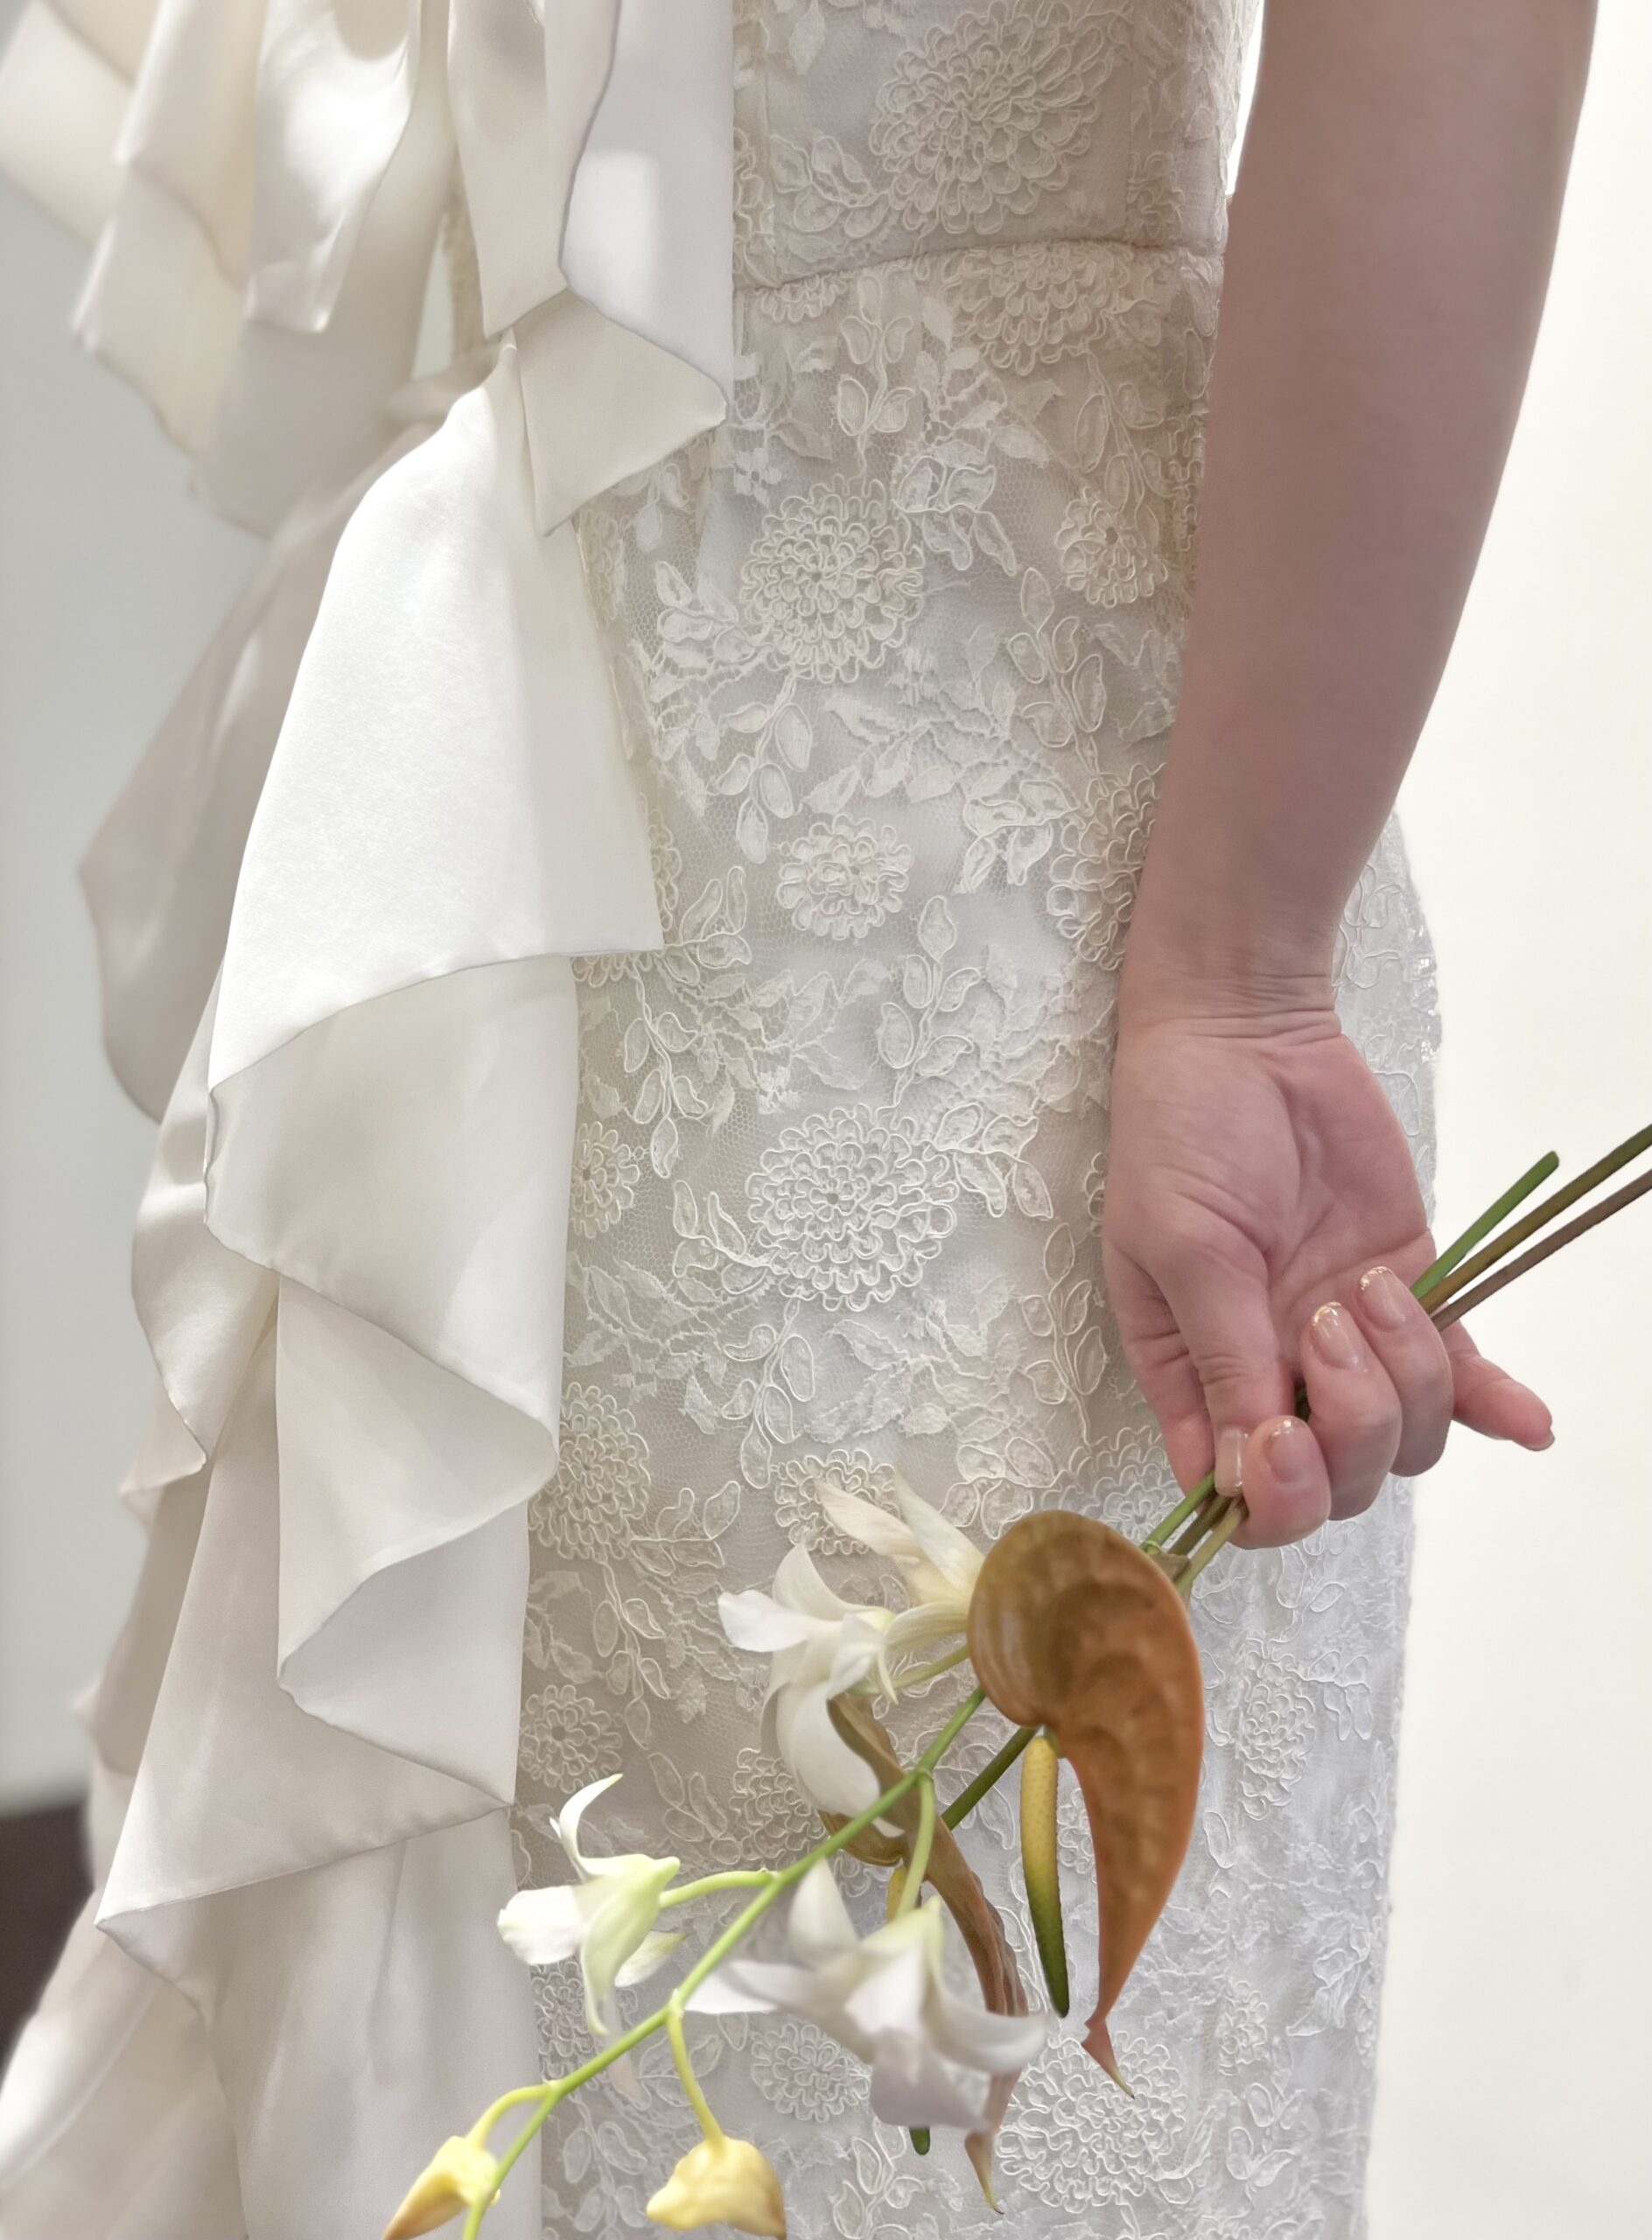 神戸エリアでお式や前撮りをされる花嫁におすすめの刺繍がおしゃれで映えるマルカリアンのスレンダーラインのウェディングドレスにすっきりしたブーケを合わせたコーディネートのご紹介